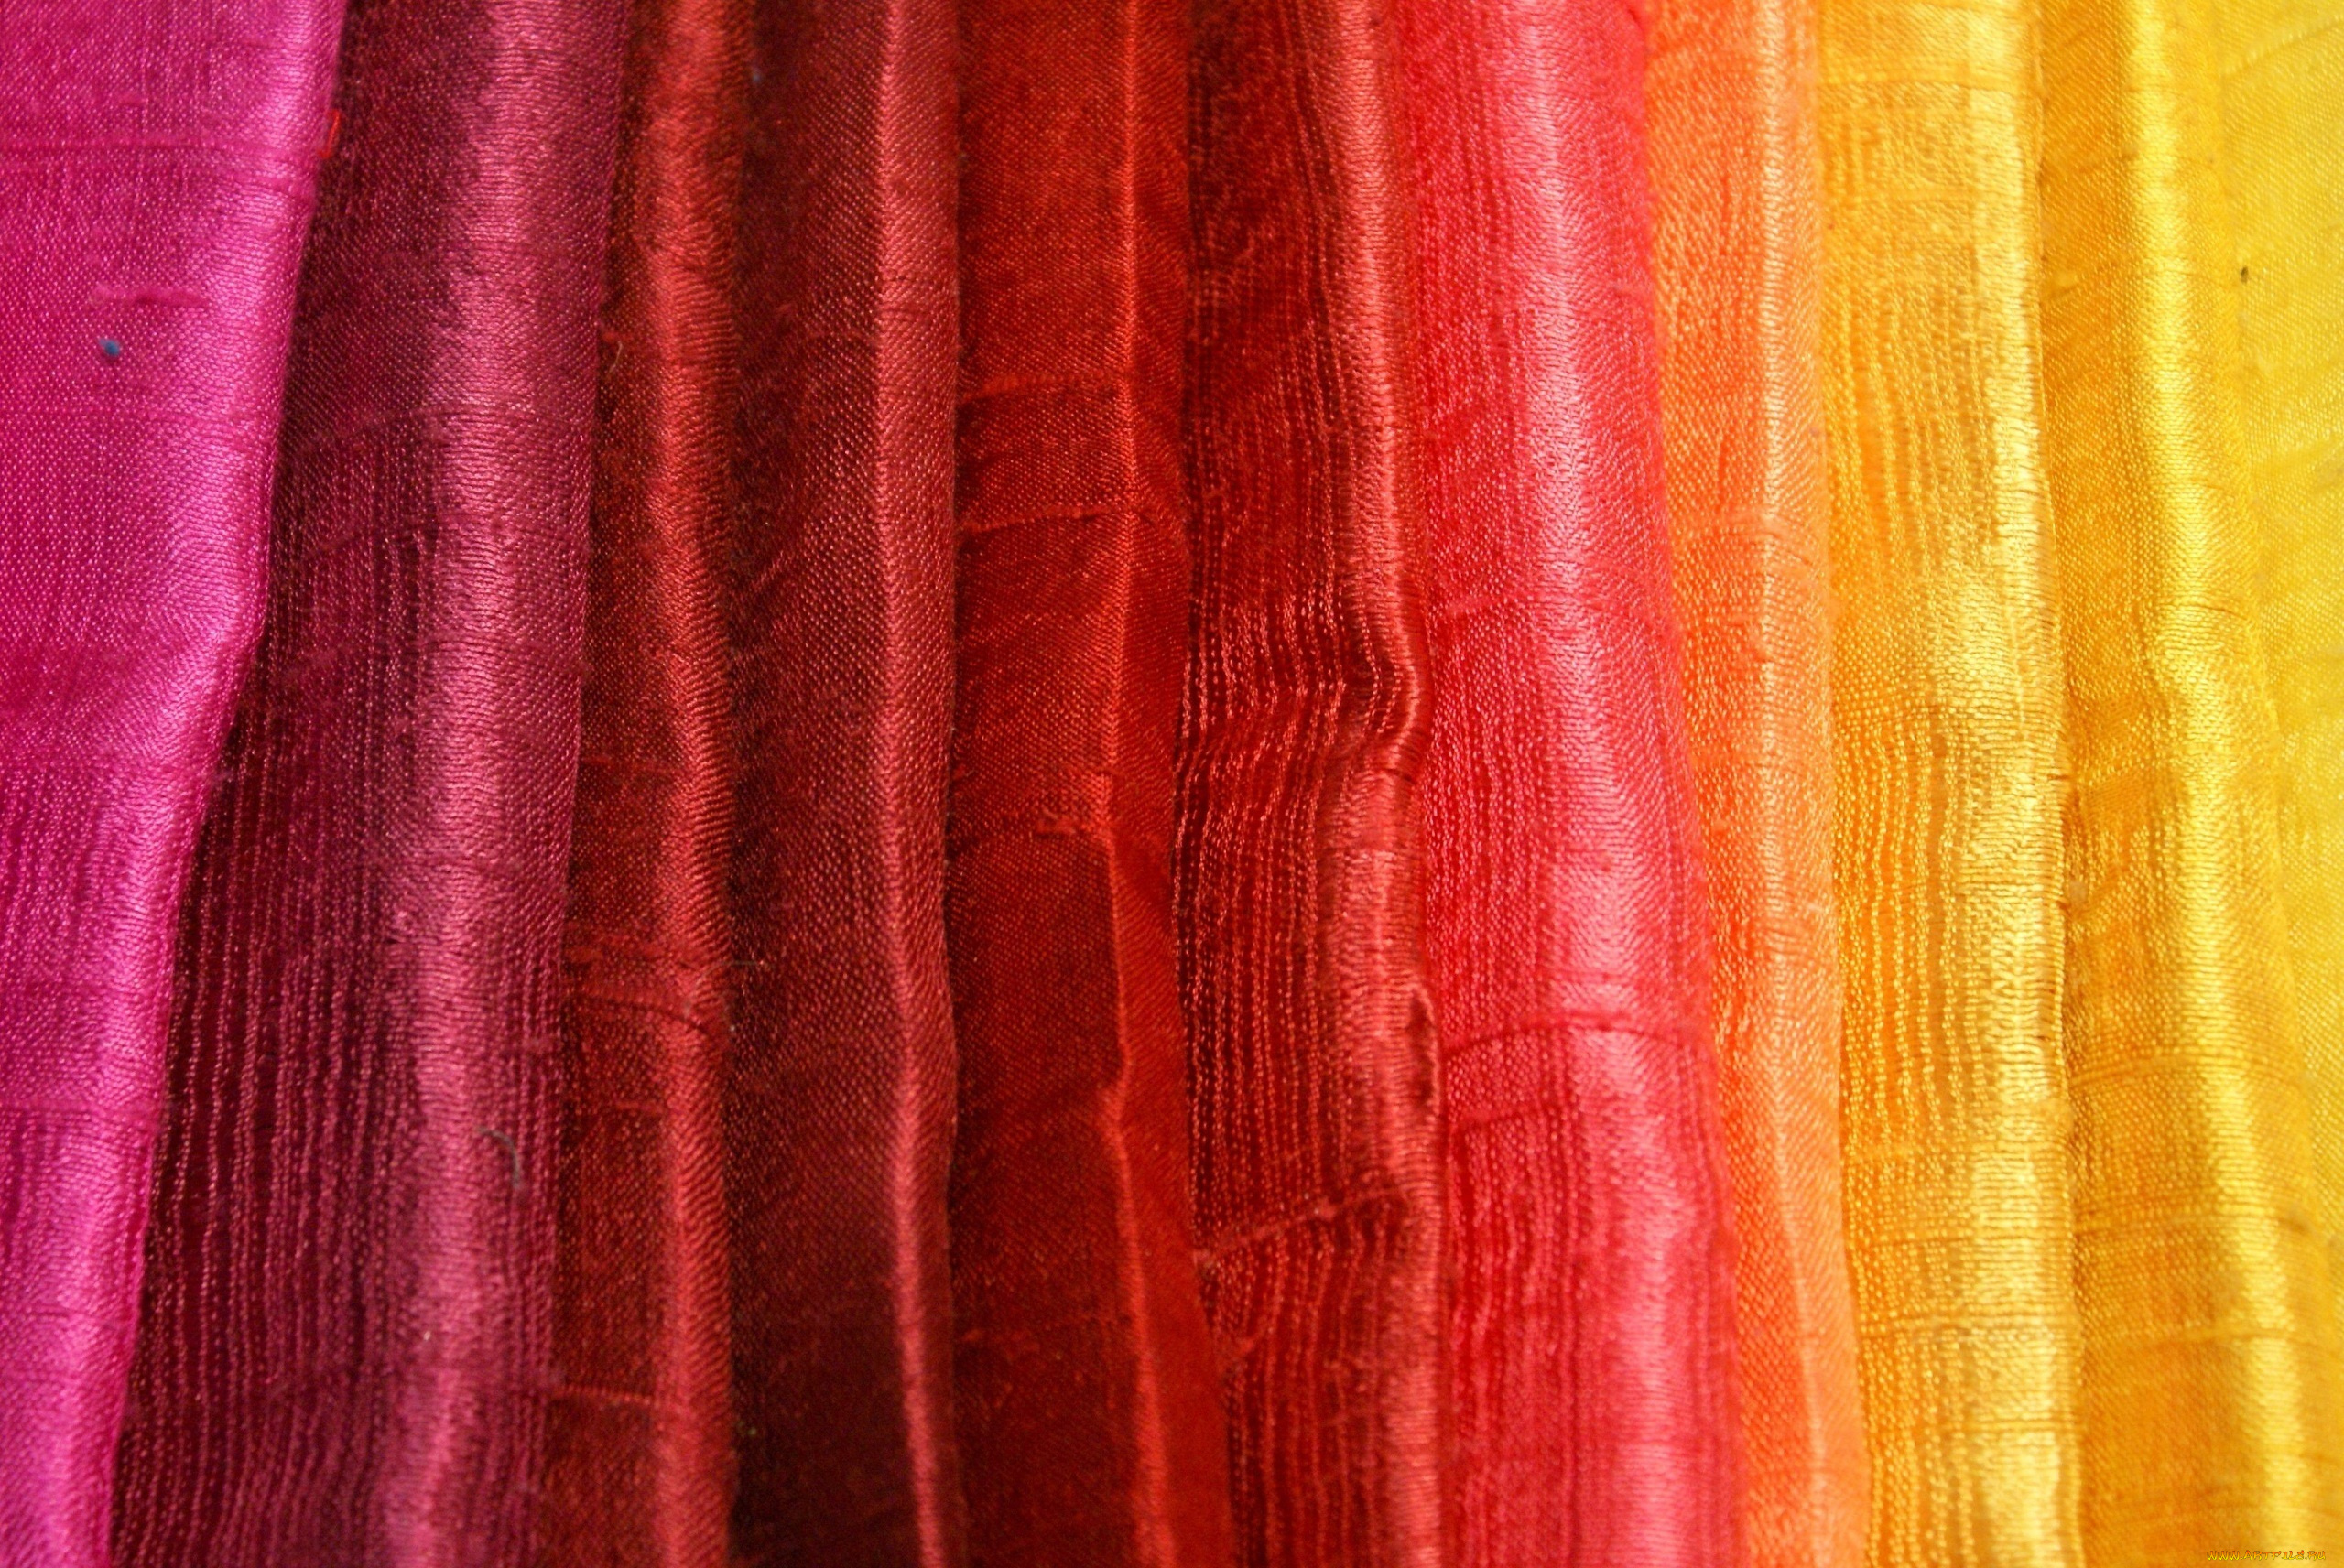 разное, текстуры, блеск, складки, желтый, розовый, ткань, цвета, красный